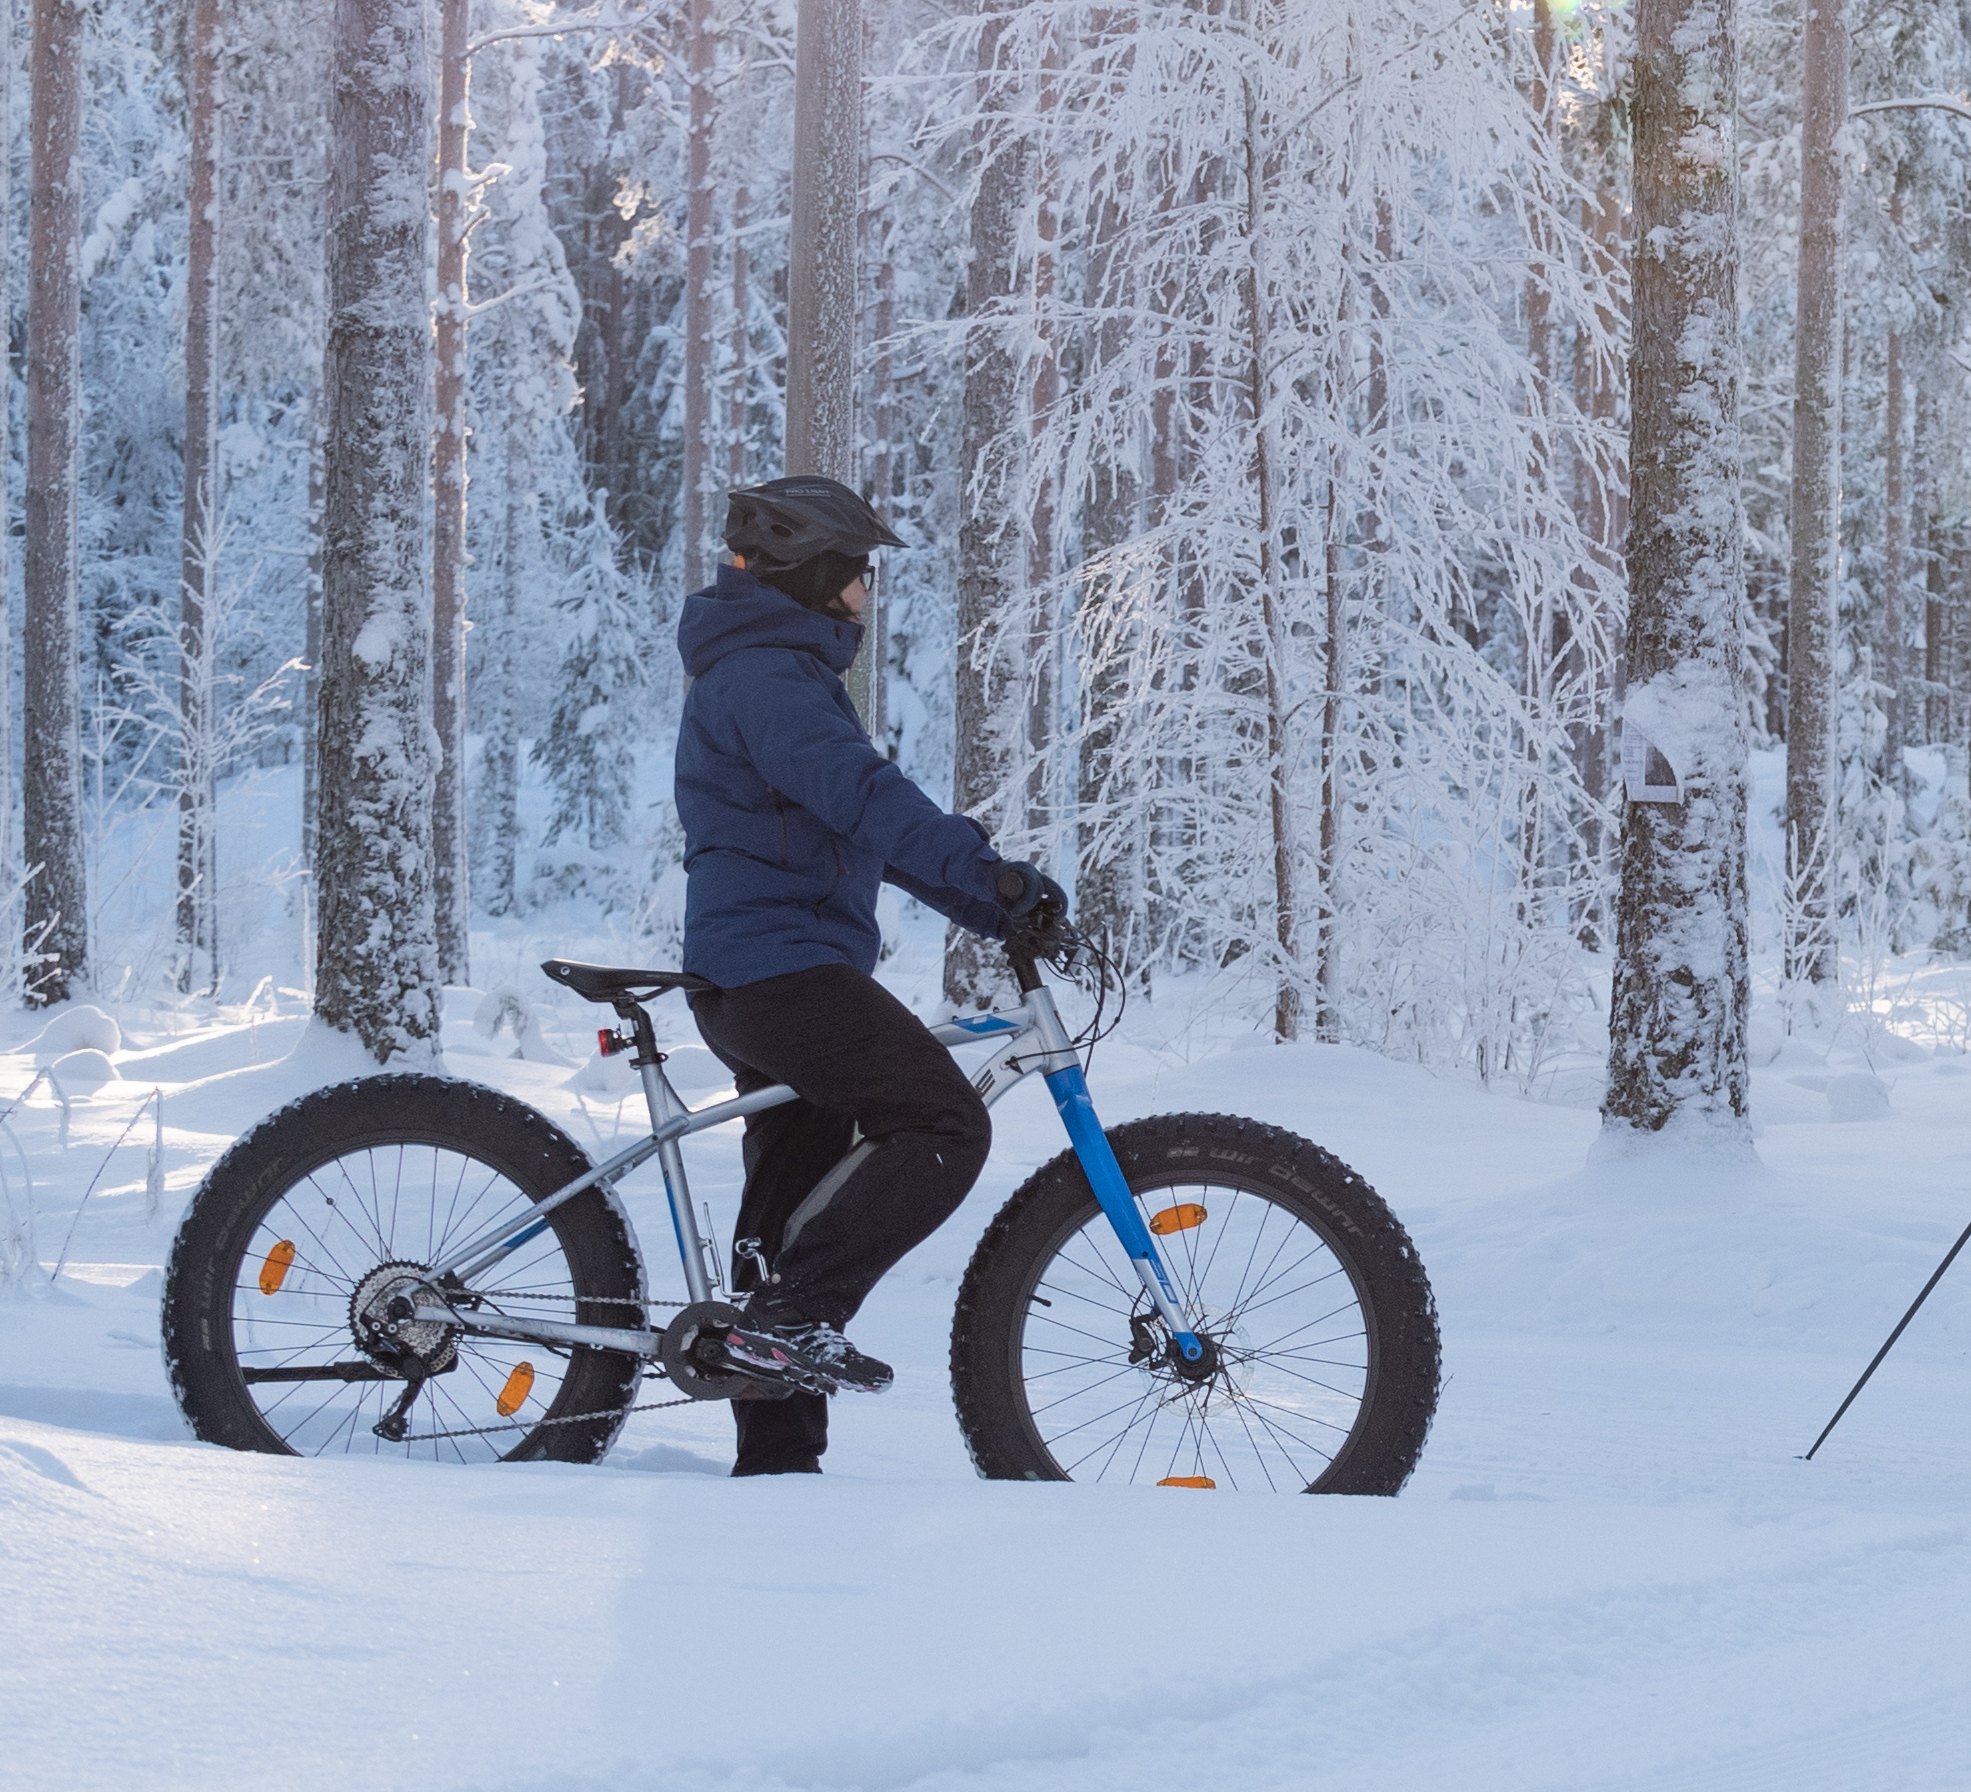 efatbike talvipyöräily talvi pyöräily